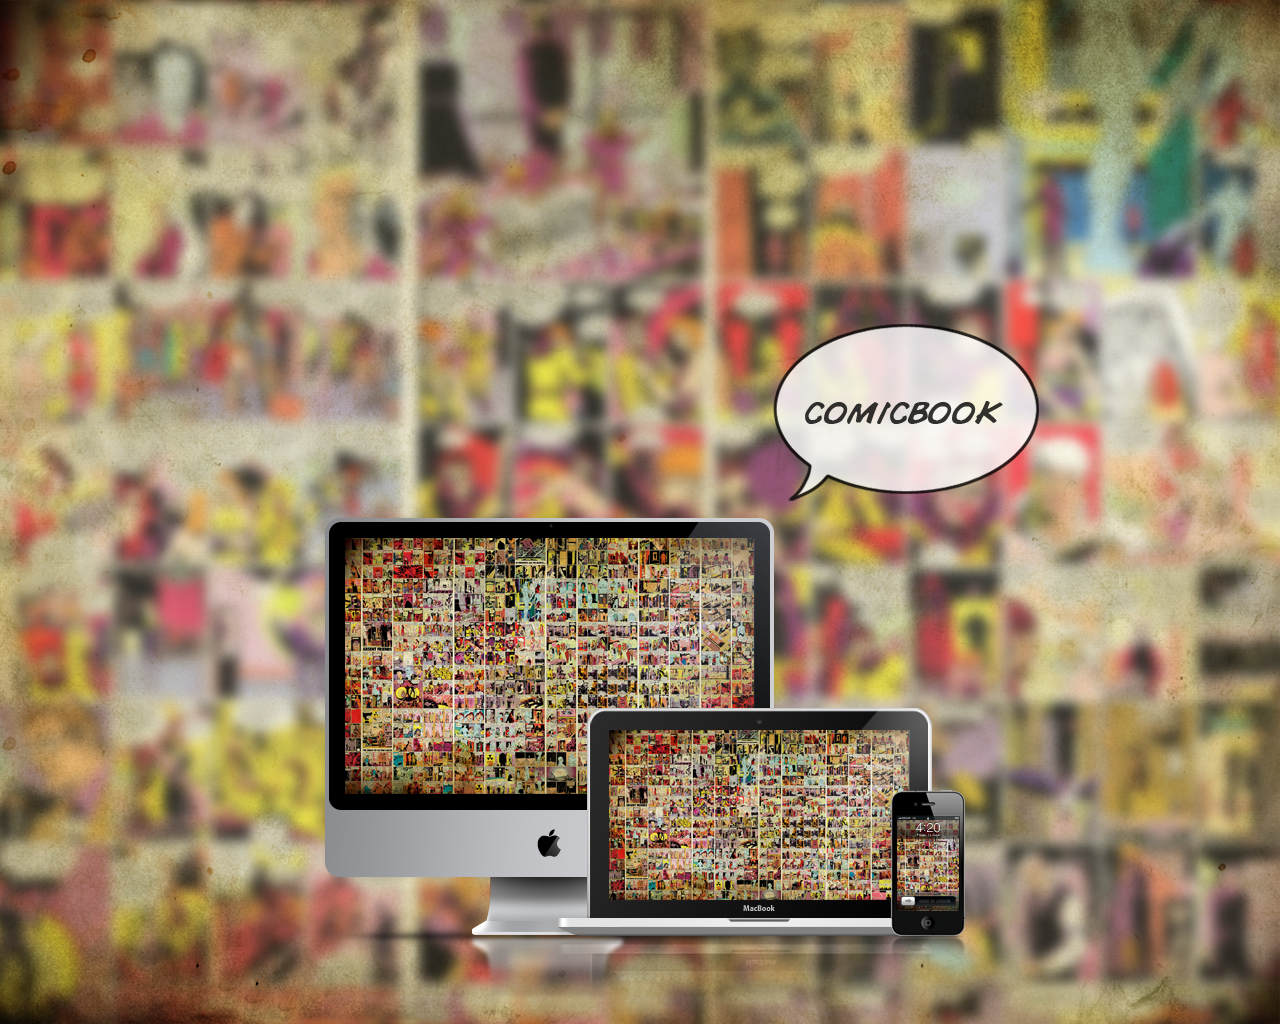 42 Comic Book Wallpaper For Bedrooms On Wallpapersafari